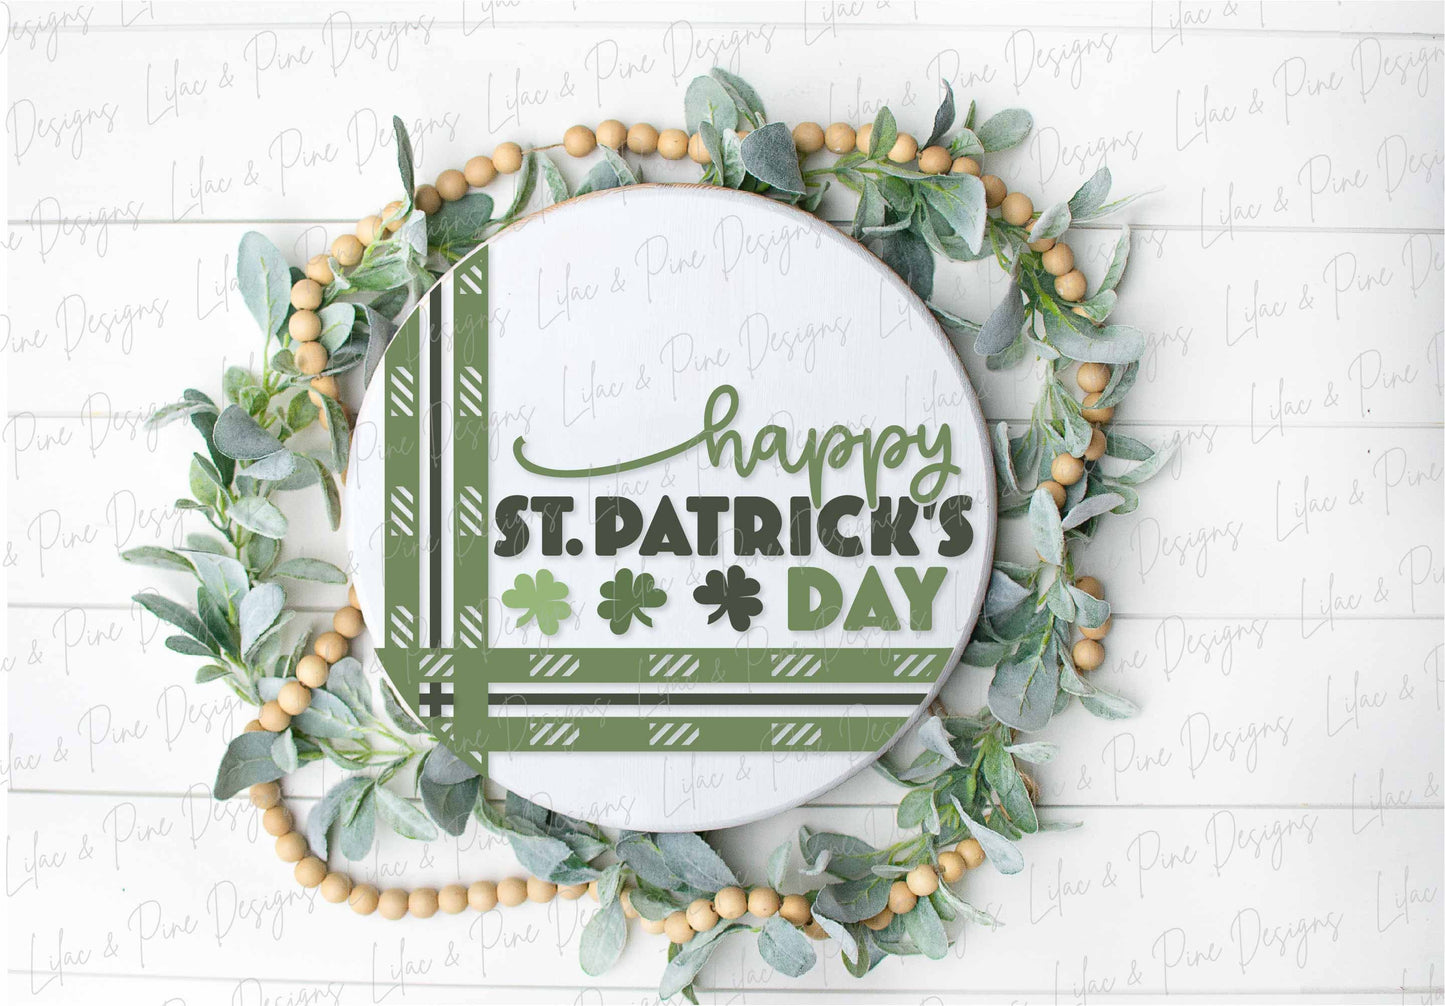 Happy St Patricks Day sign SVG, St Patricks Day door hanger, Shamrock Welcome sign SVG, clover door round svg, Glowforge SVG, laser cut file